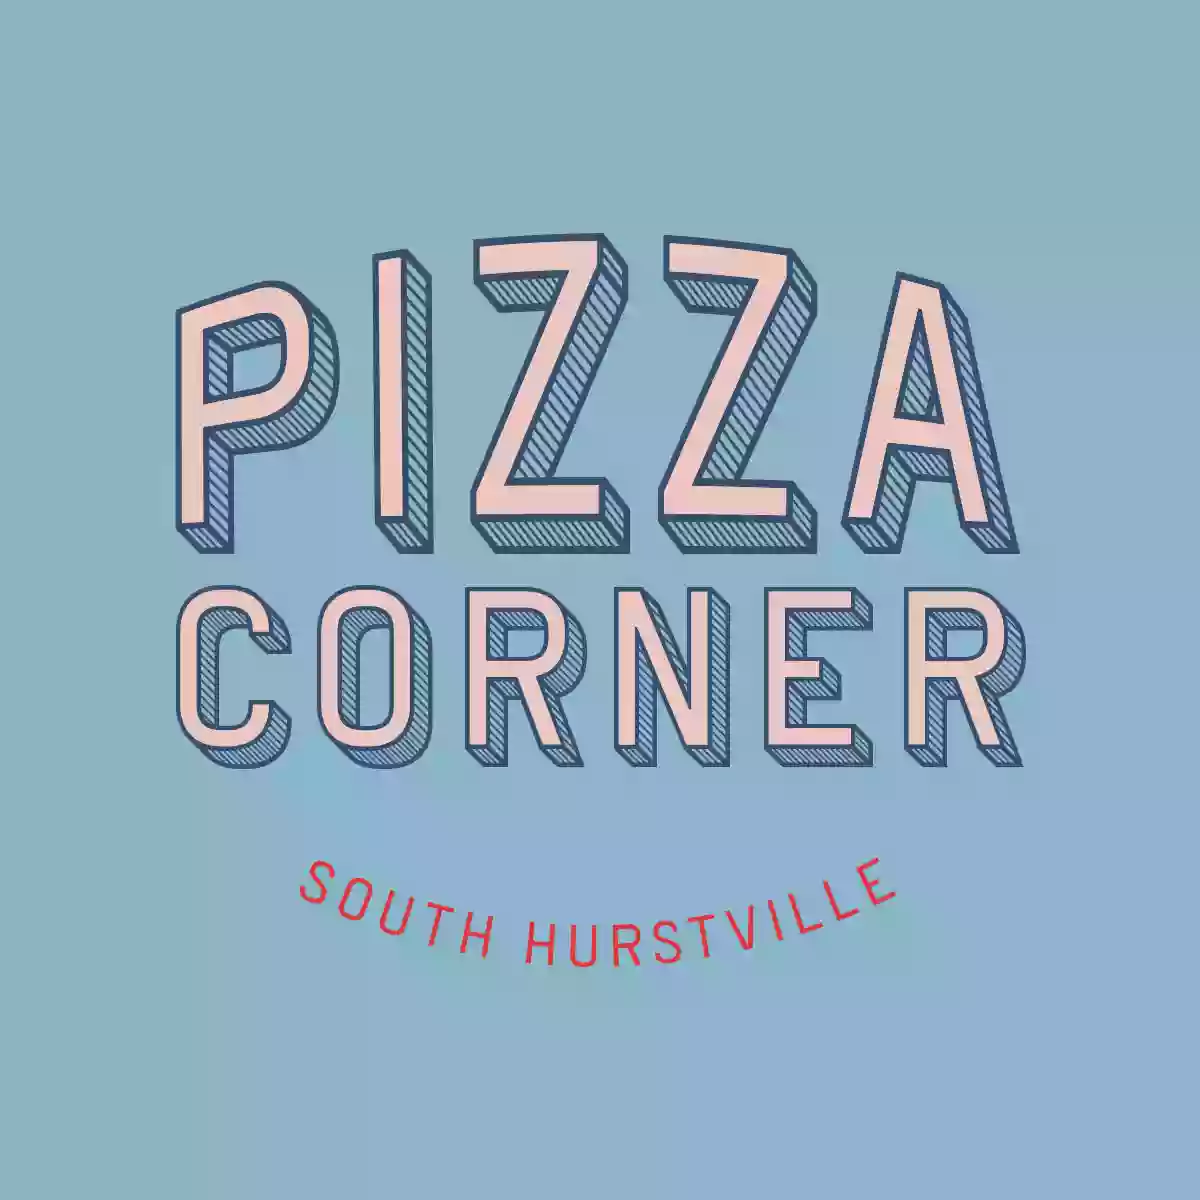 Pizza Corner South Hurstville